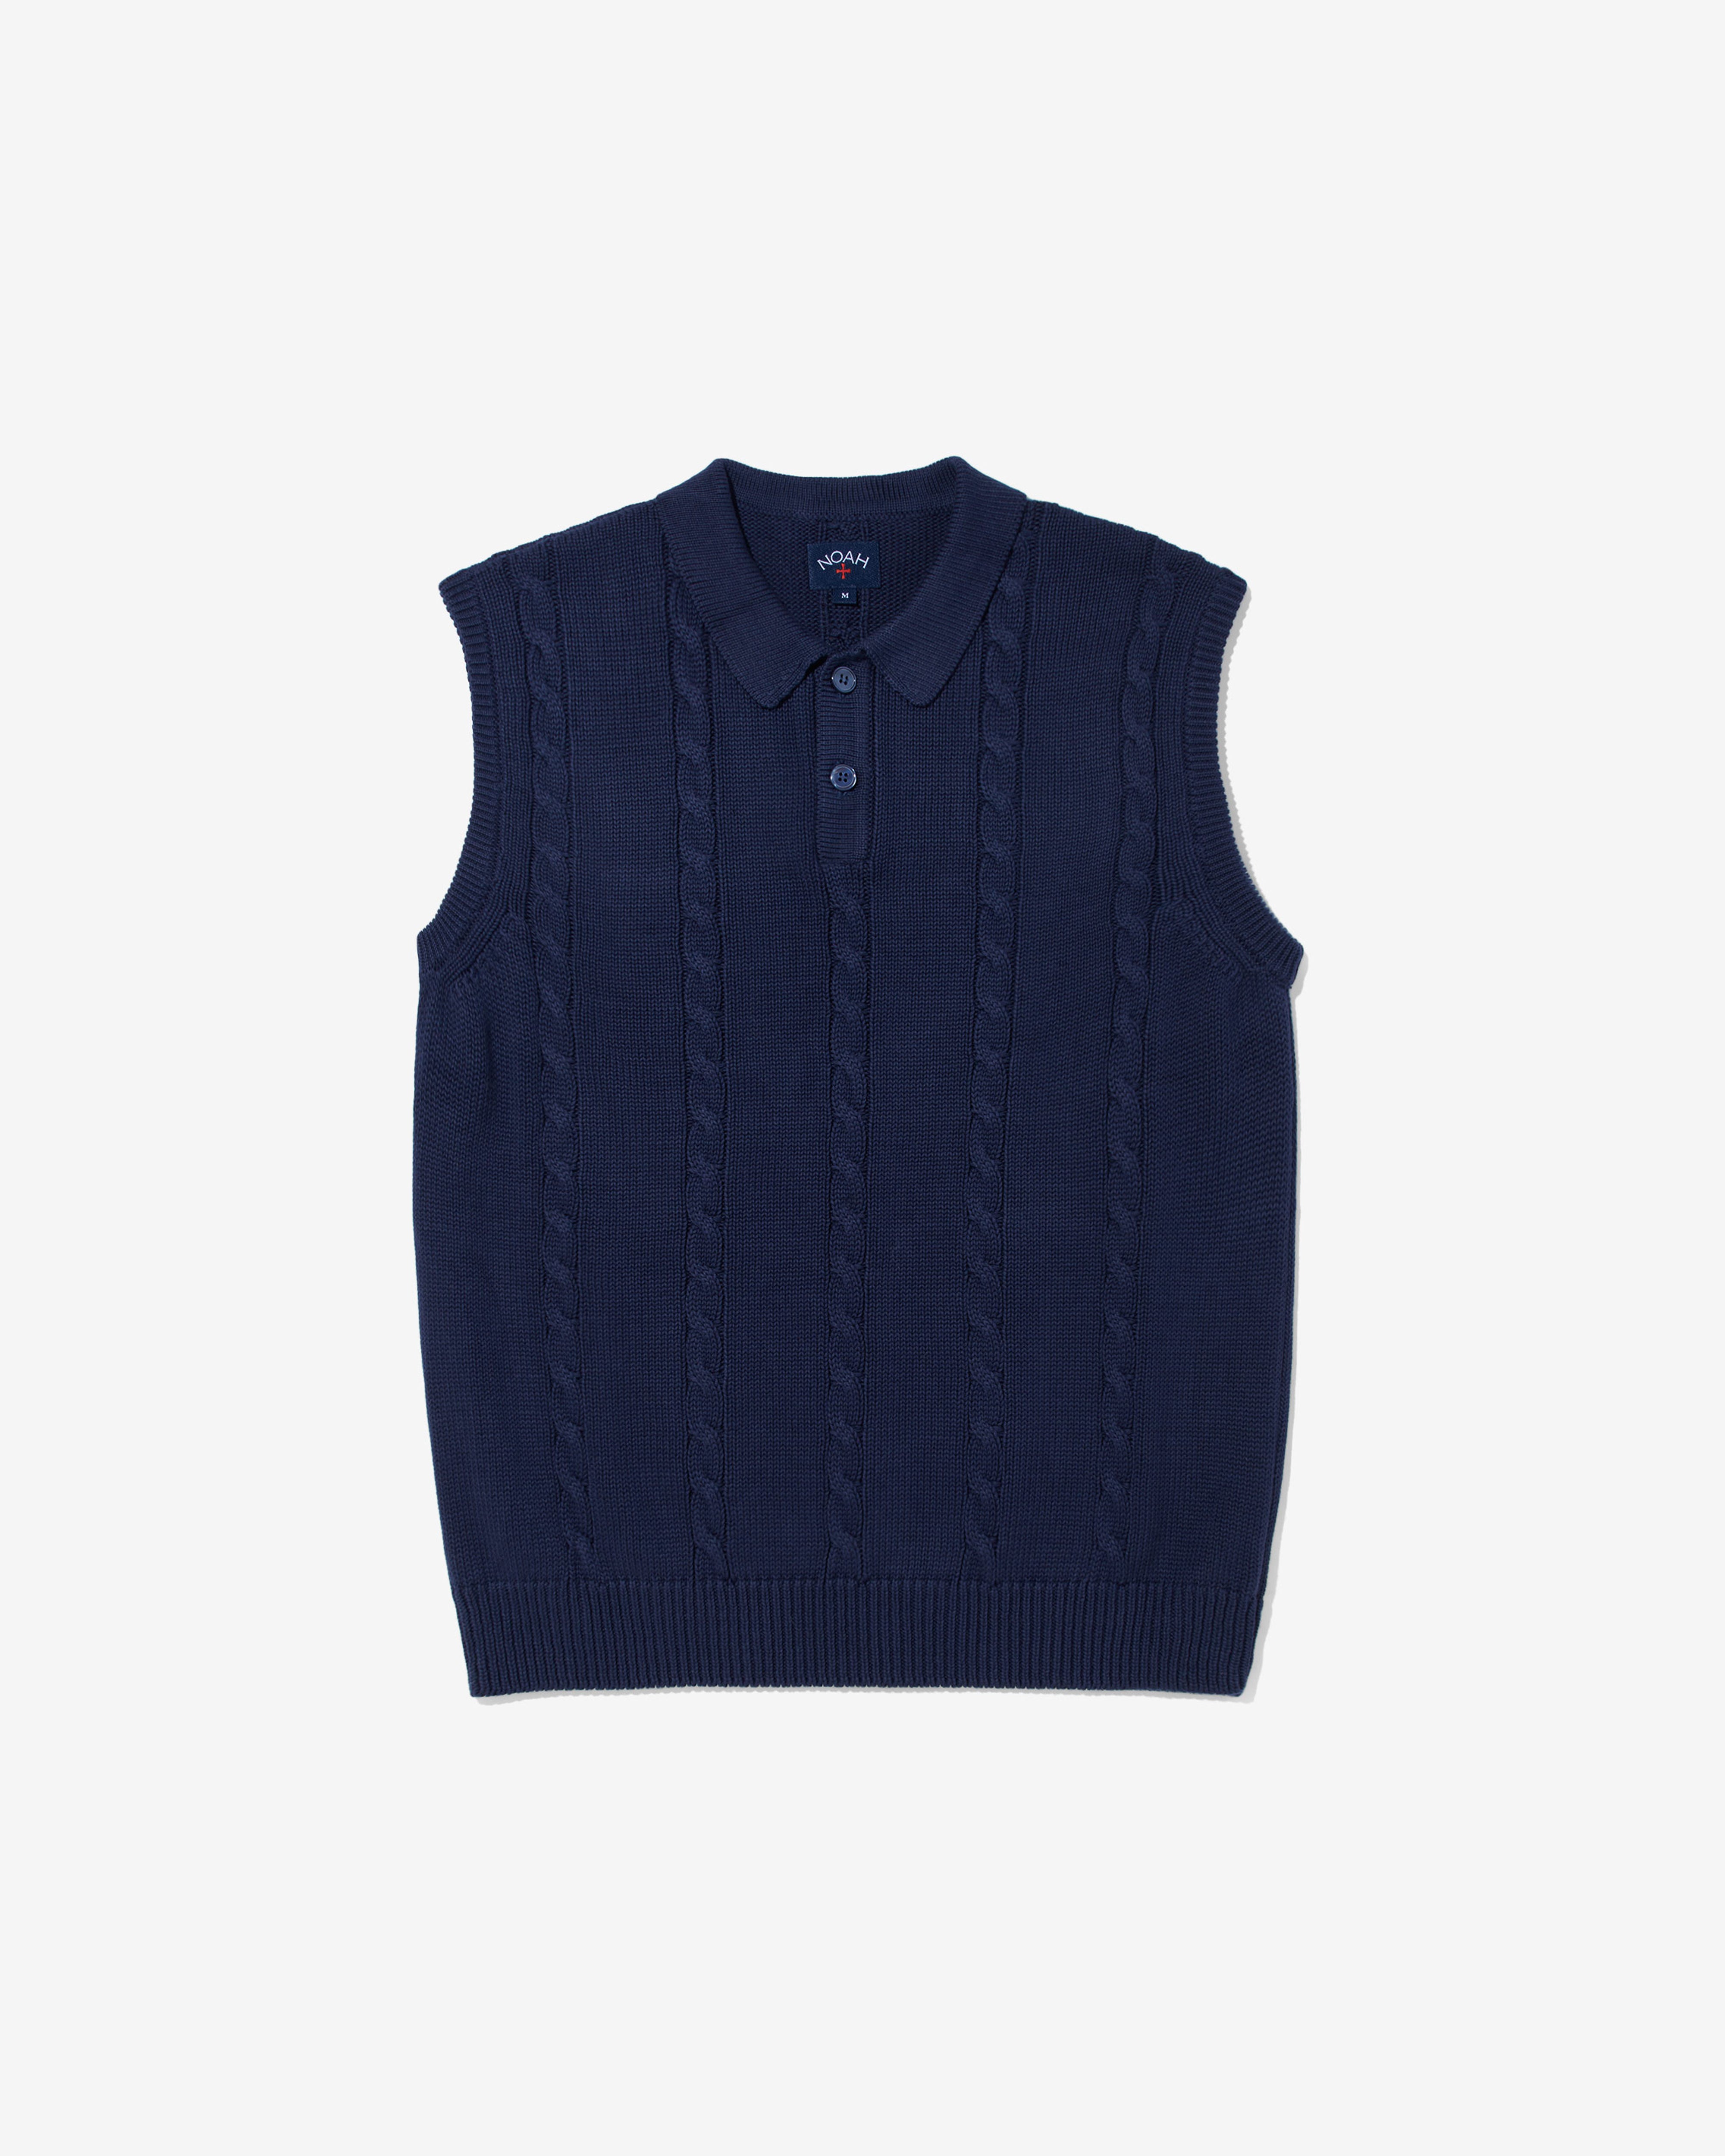 Noah - Men's Cotton Cable Sweater Vest - (Navy) – DSMNY E-SHOP